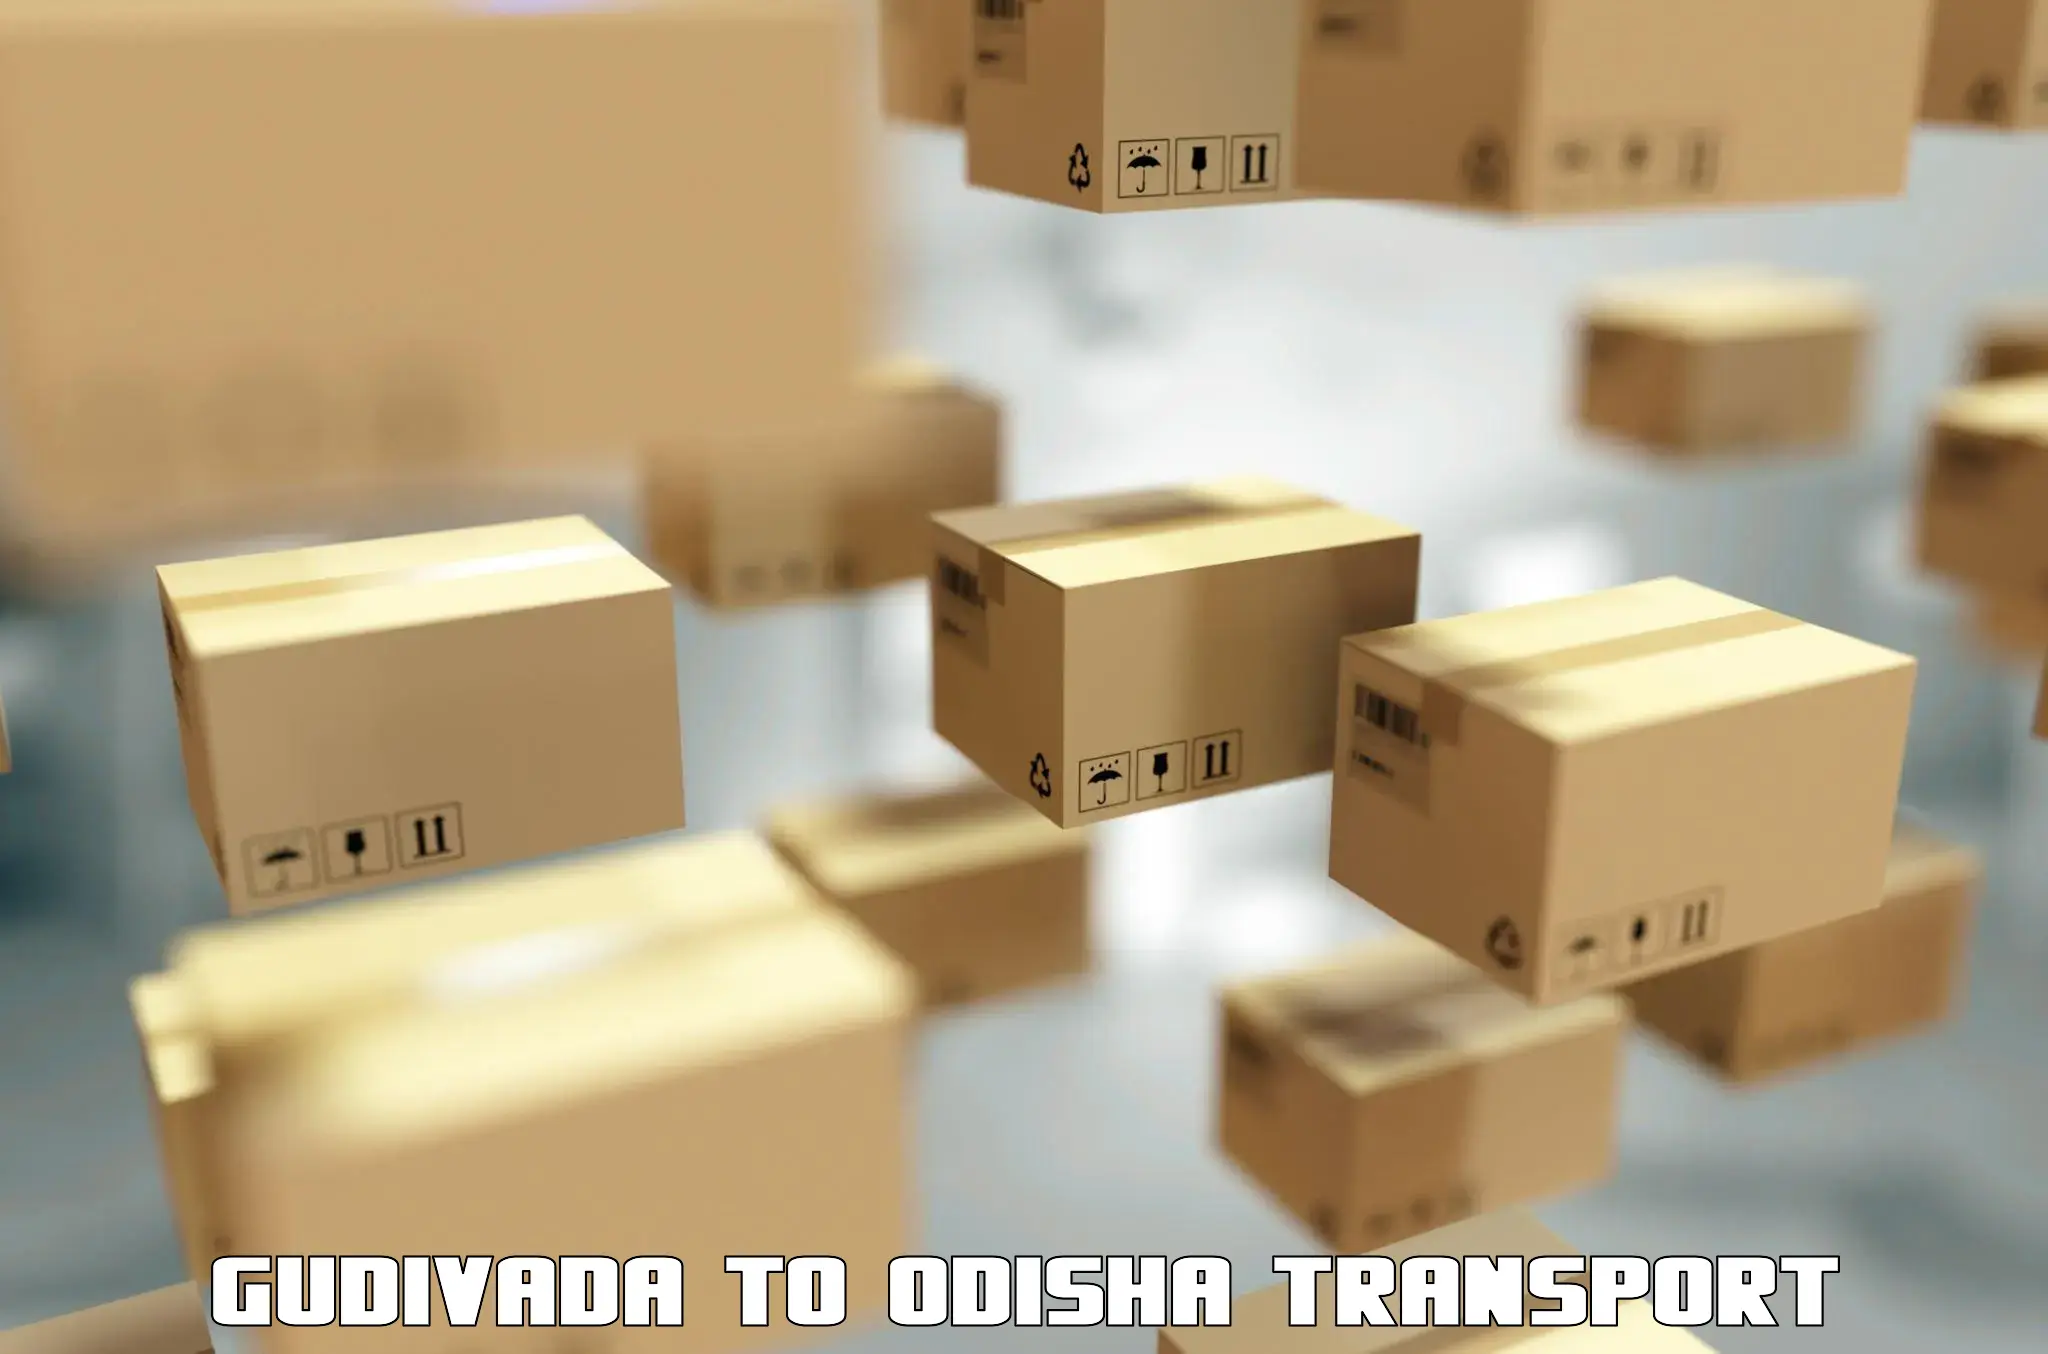 Transport in sharing Gudivada to Basta